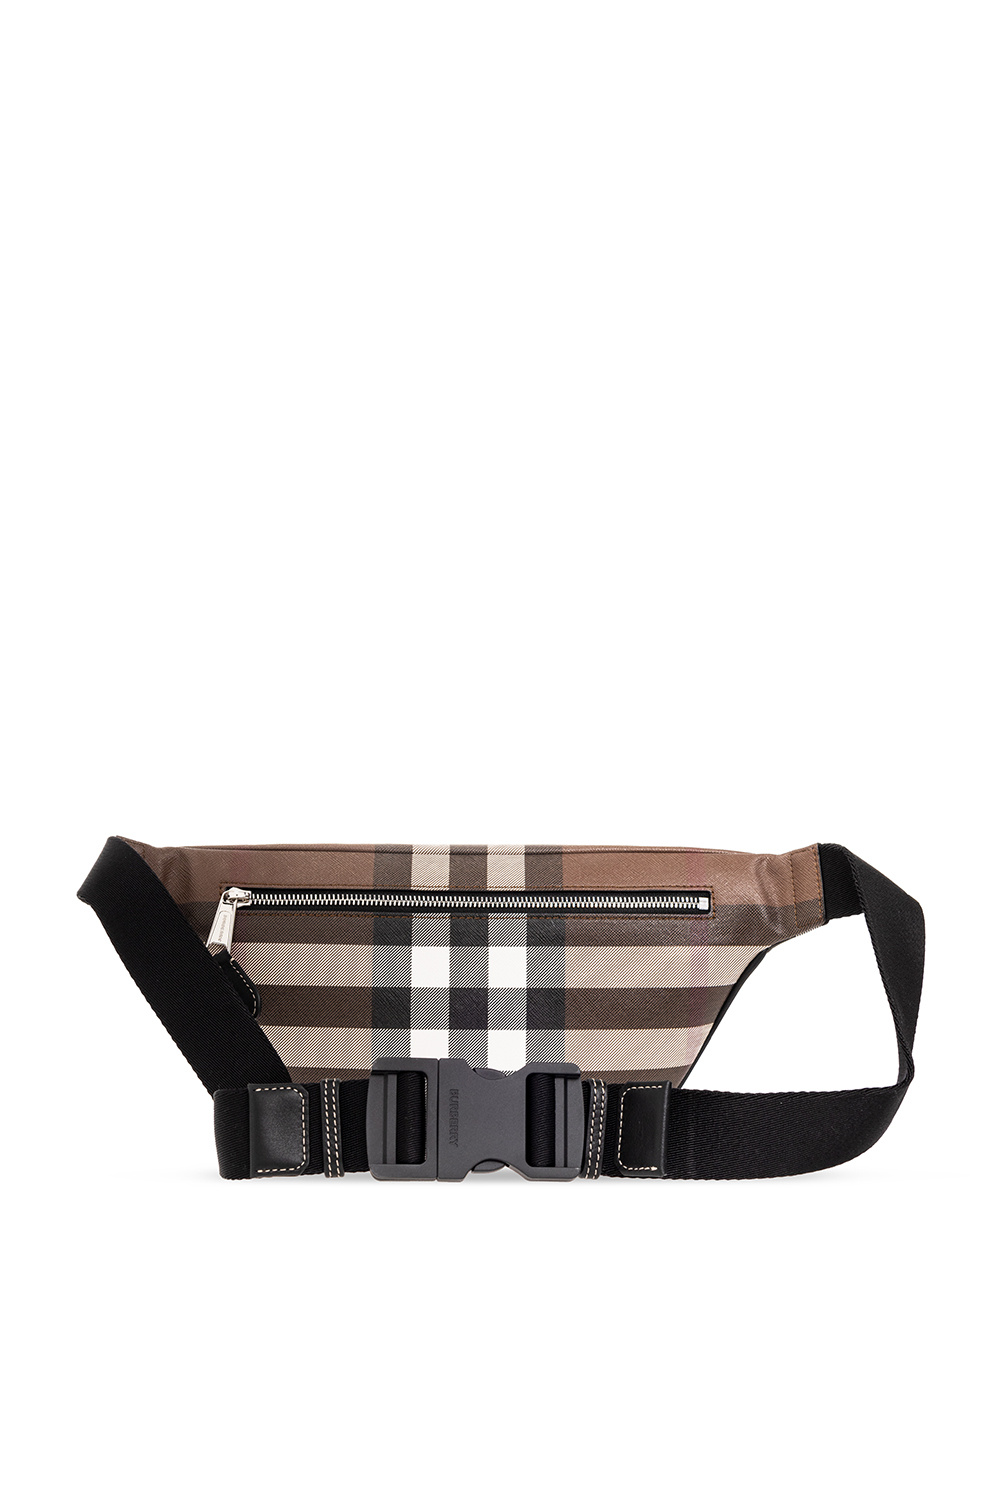 burberry sunglasses ‘Cason’ belt bag